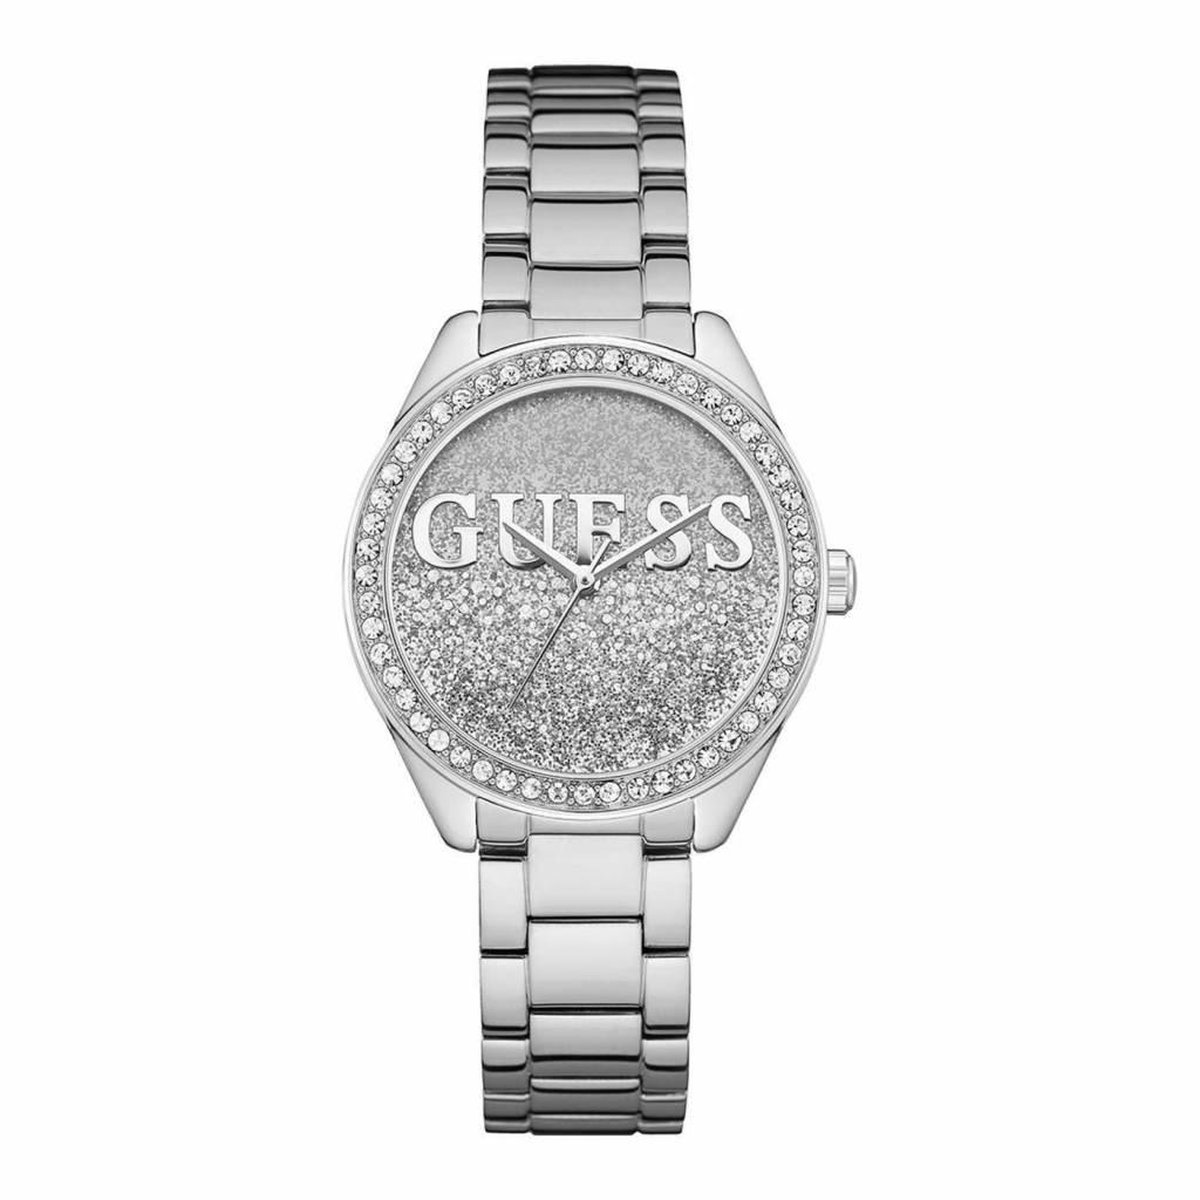 GUESS Watches - W0987L1 - Horloge - Vrouwen - RVS - Zilverkleurig - 36,5 mm